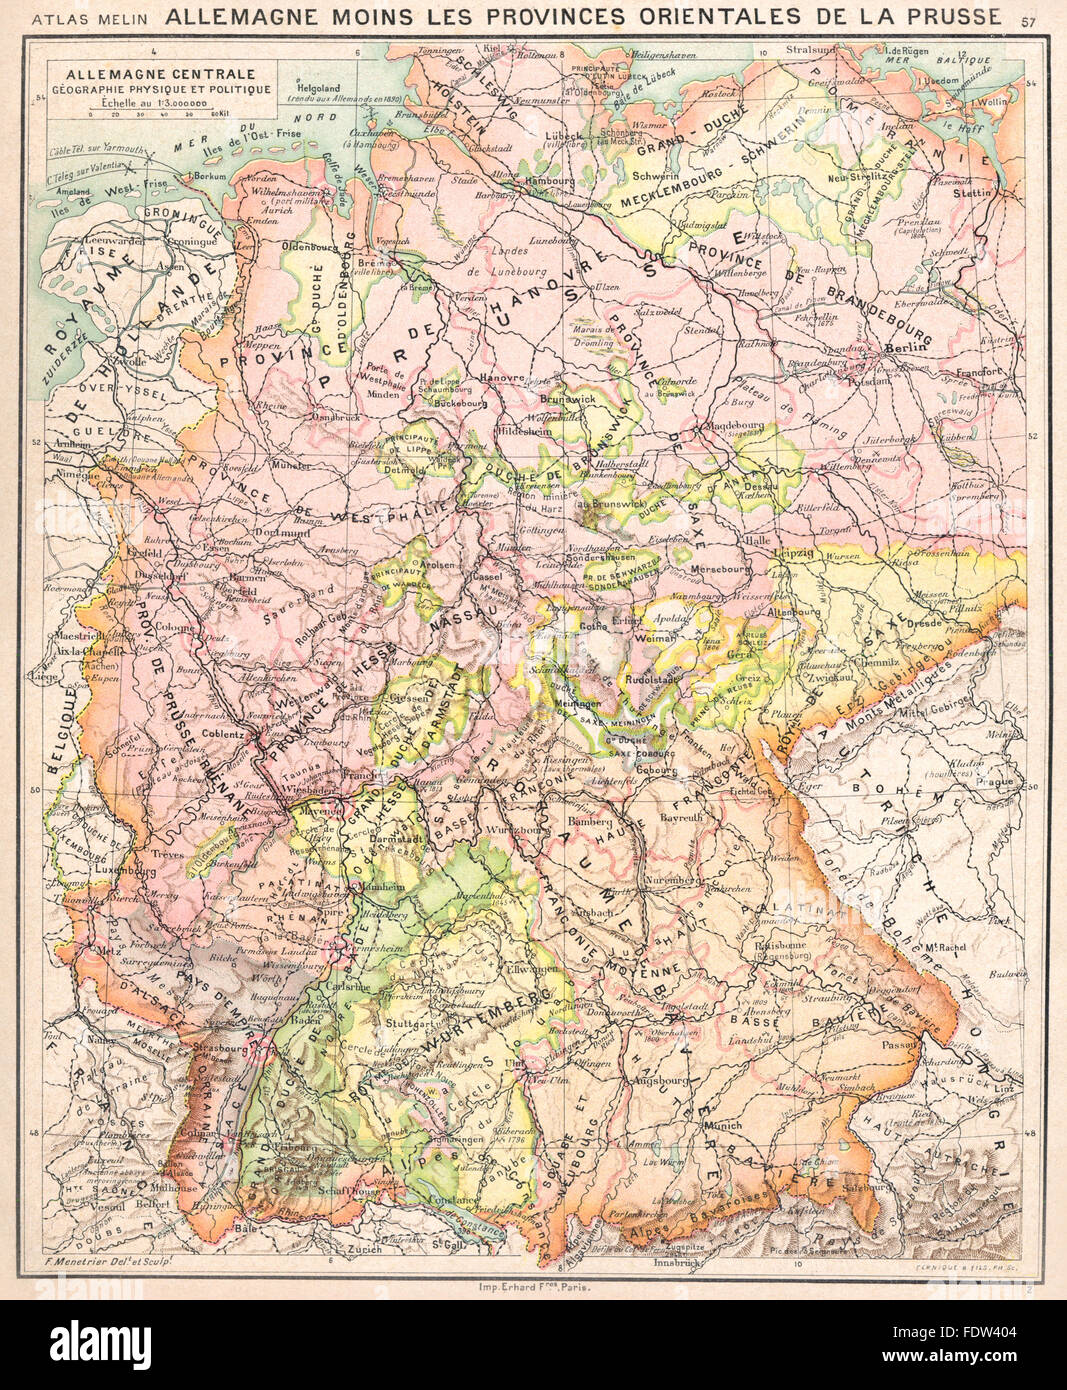 Alemania: Allemagne centrale Géographie physique et politique, 1900 mapa antiguo Foto de stock